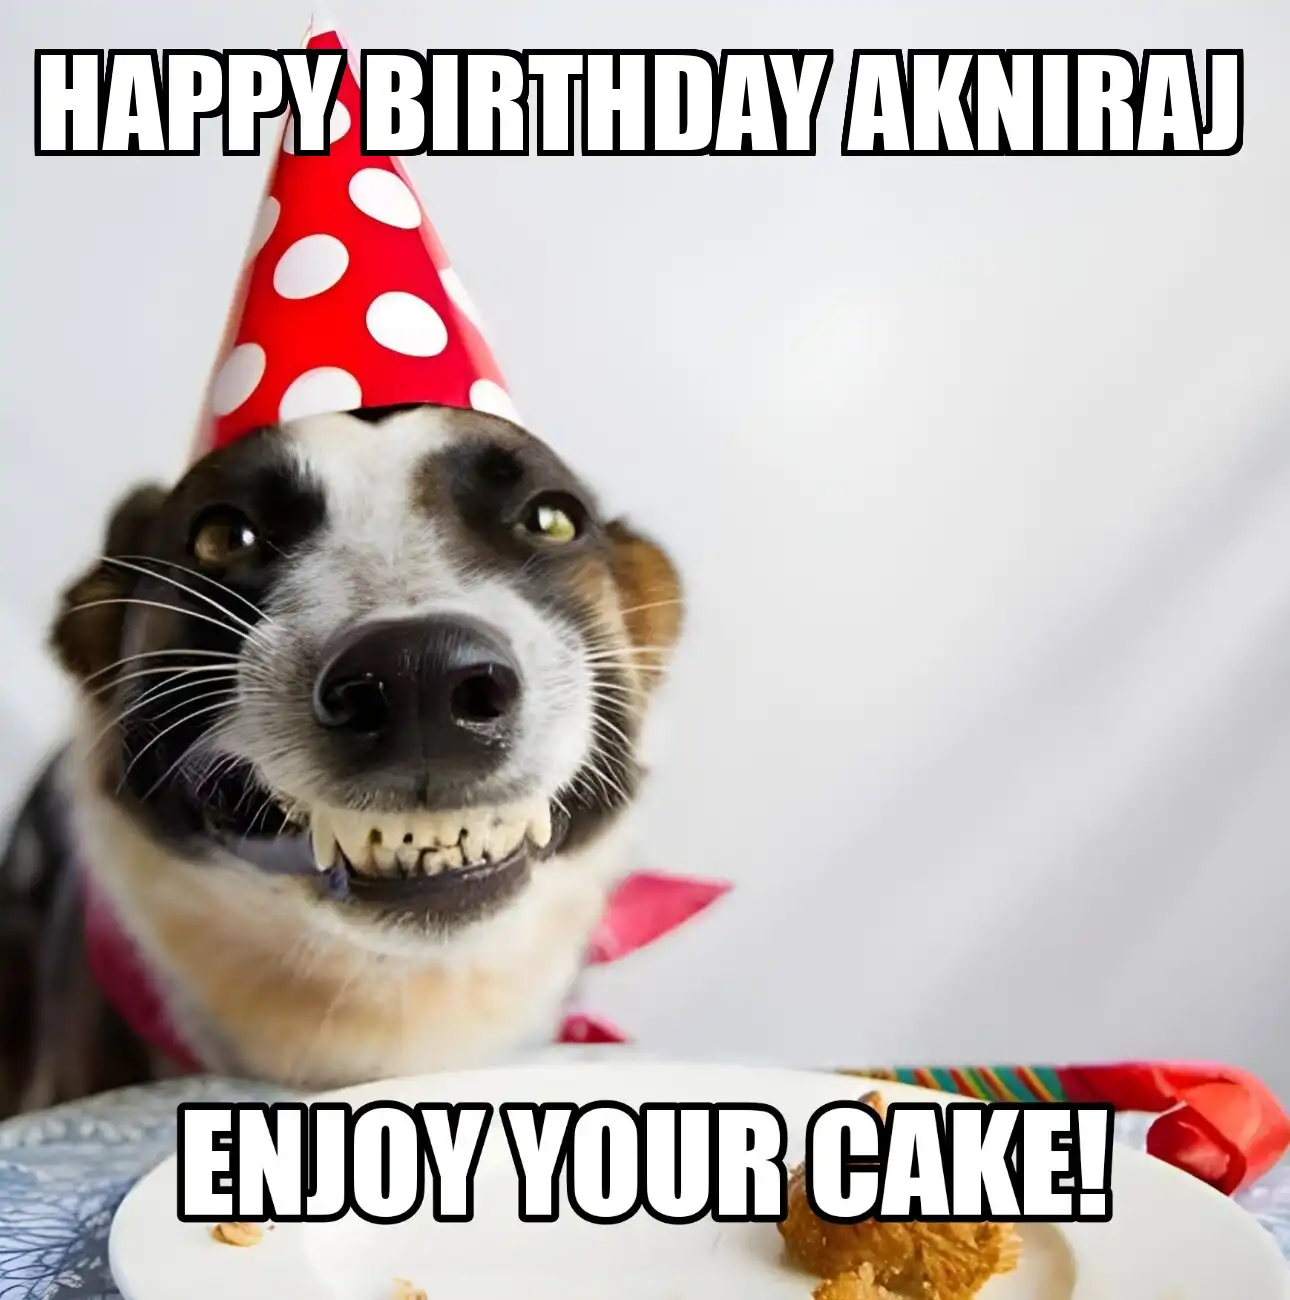 Happy Birthday Akniraj Enjoy Your Cake Dog Meme